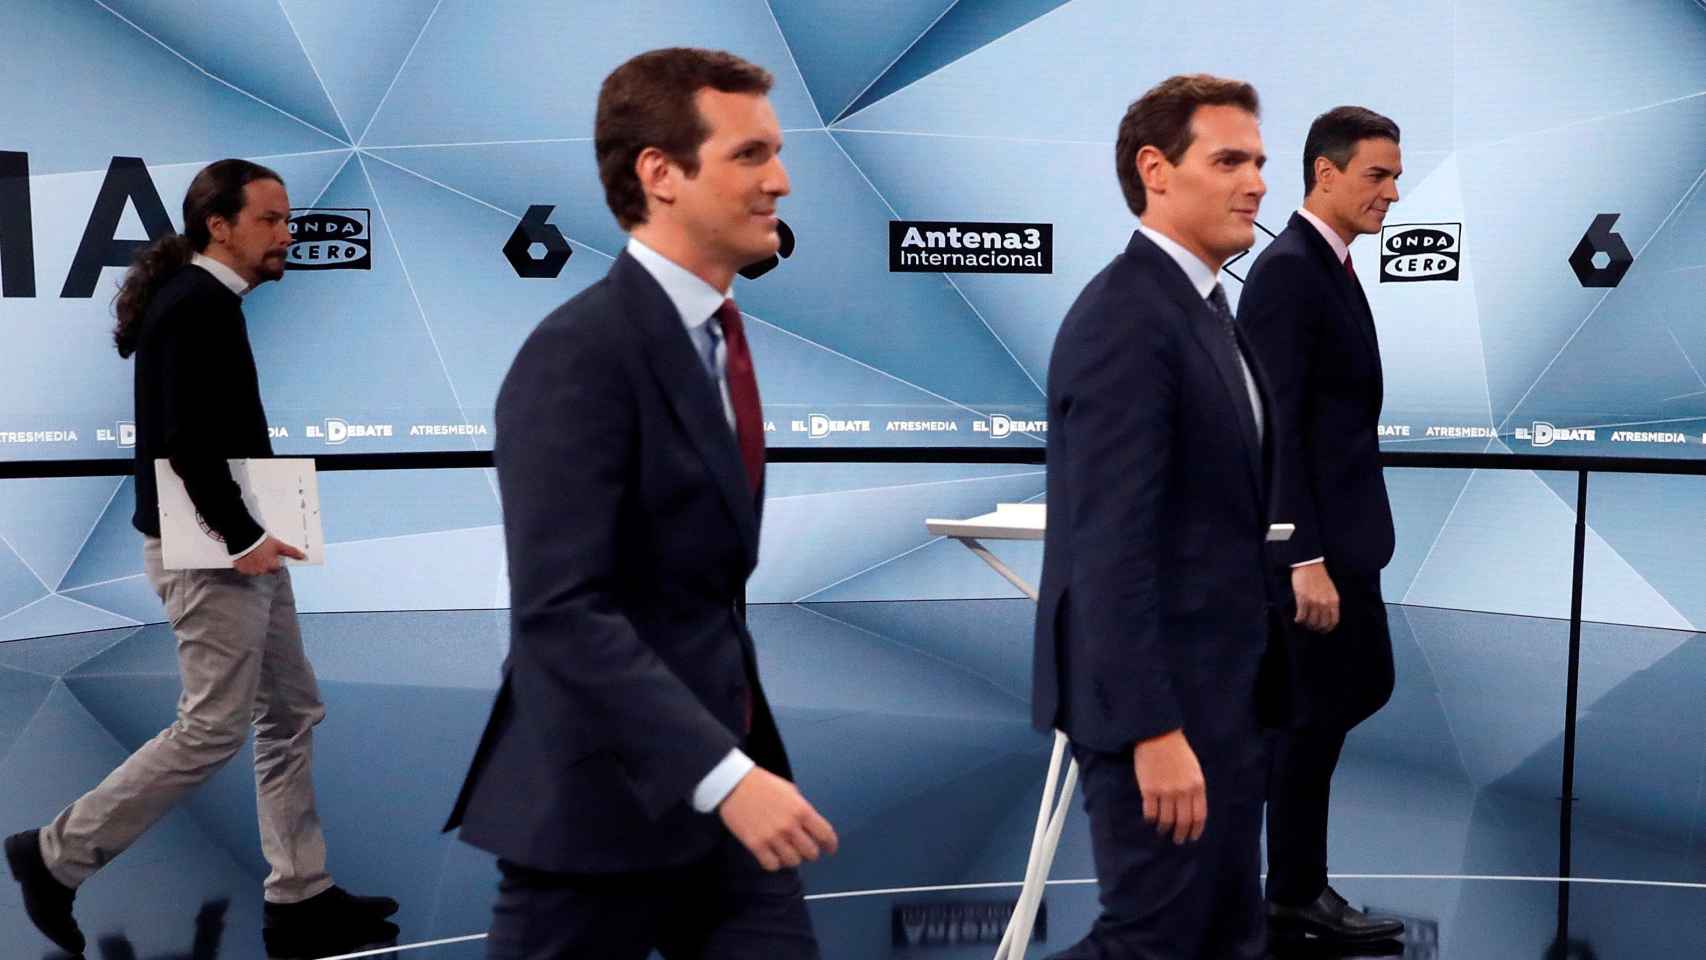 Pablo Casado, Albert Rivera, Pedro Sánchez y Pablo Iglesias antes de empezar el debate electoral de abril de 2019.